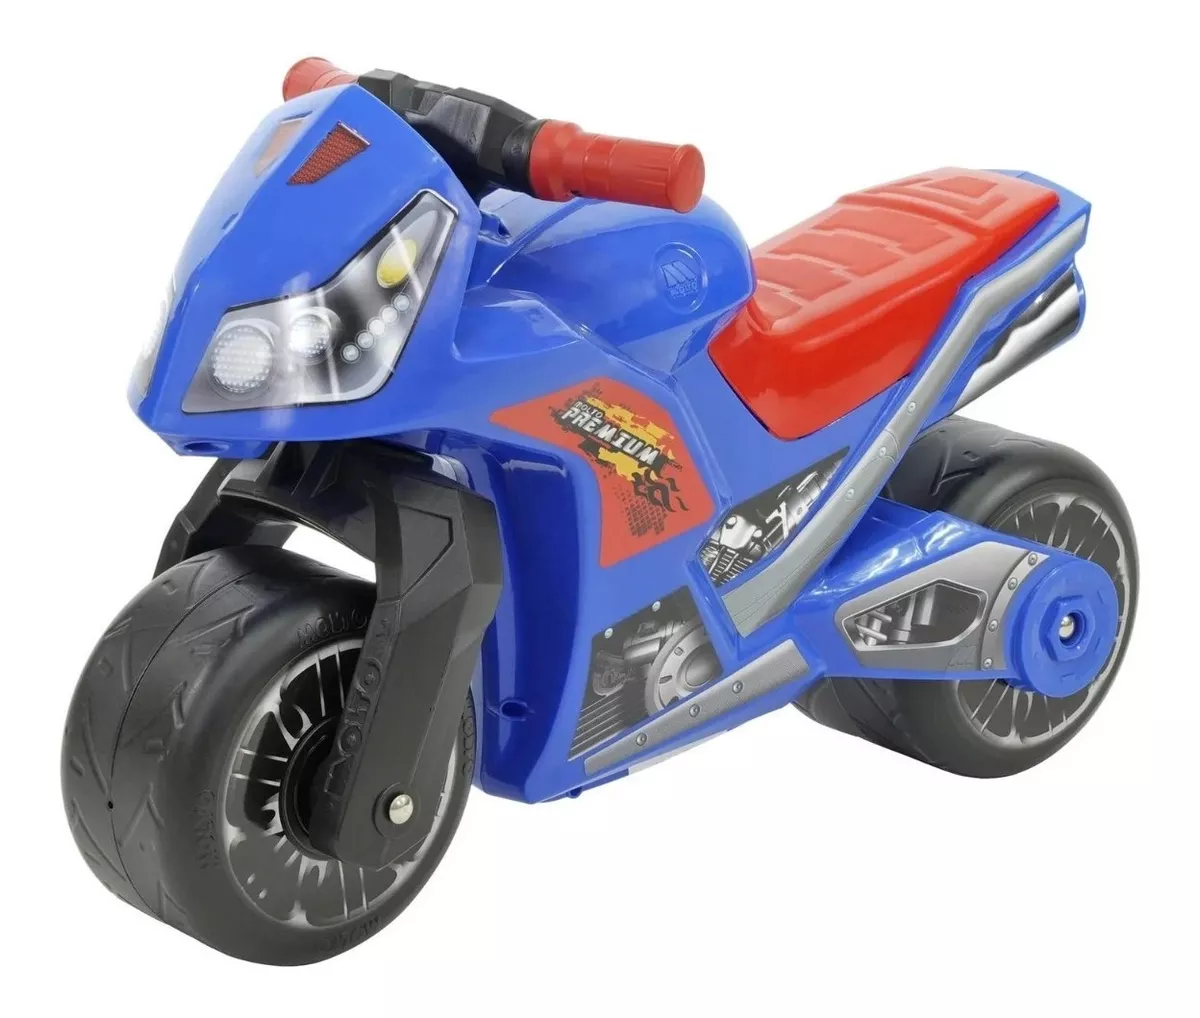 Tercera imagen para búsqueda de motos para niños